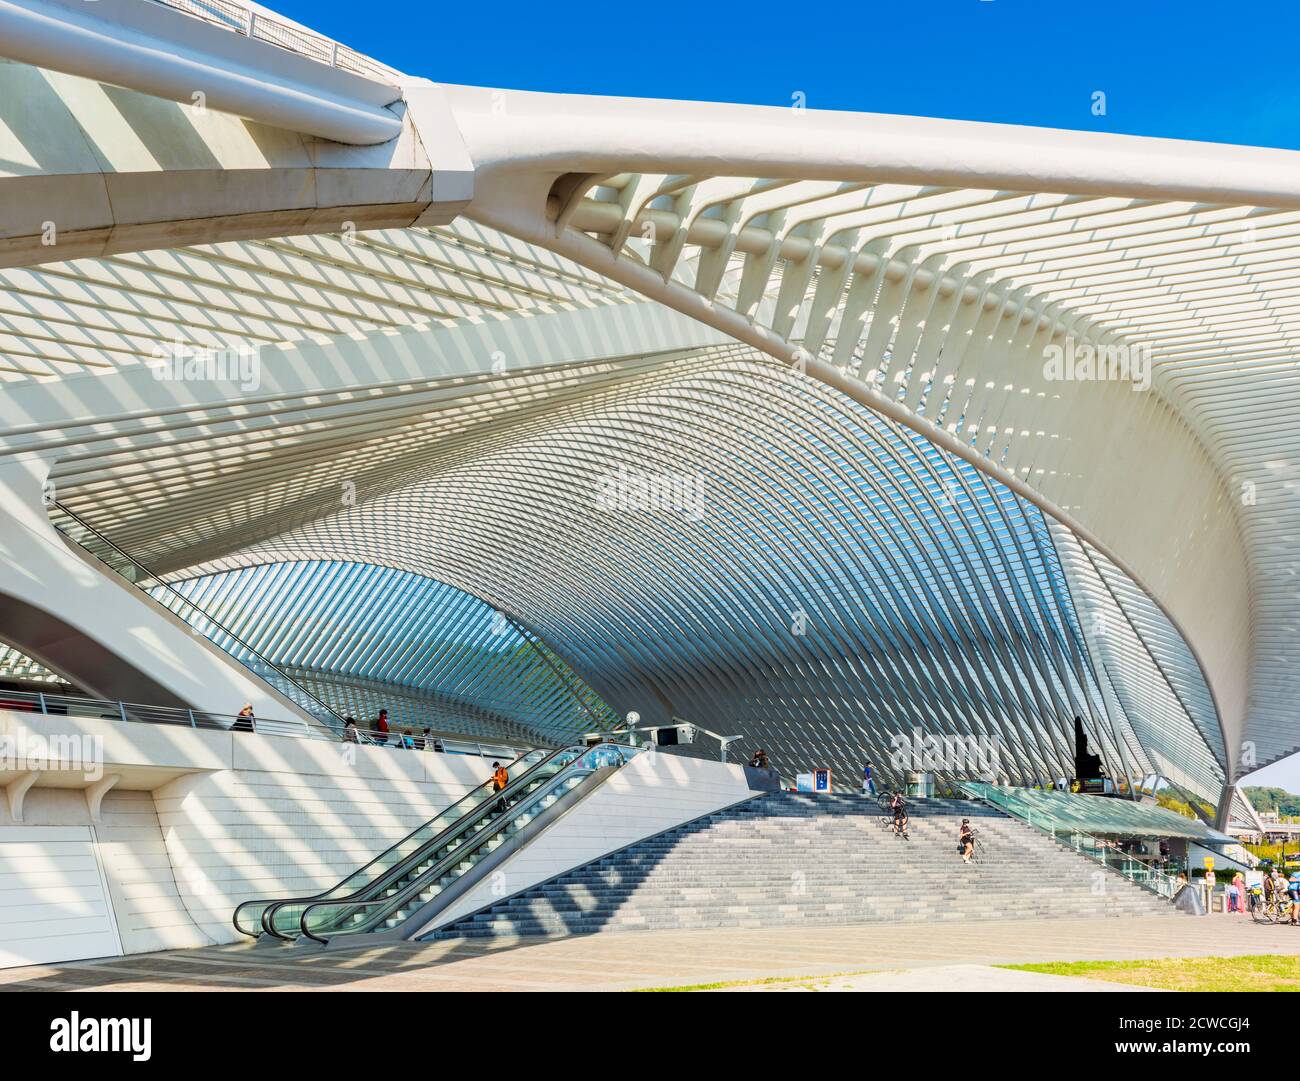 Vue latérale de l'entrée principale de la gare de Liège Guillemins à Liège, Belgique. Il a été conçu par l'architecte Santiago Calatrava et a ouvert ses portes en 20 Banque D'Images